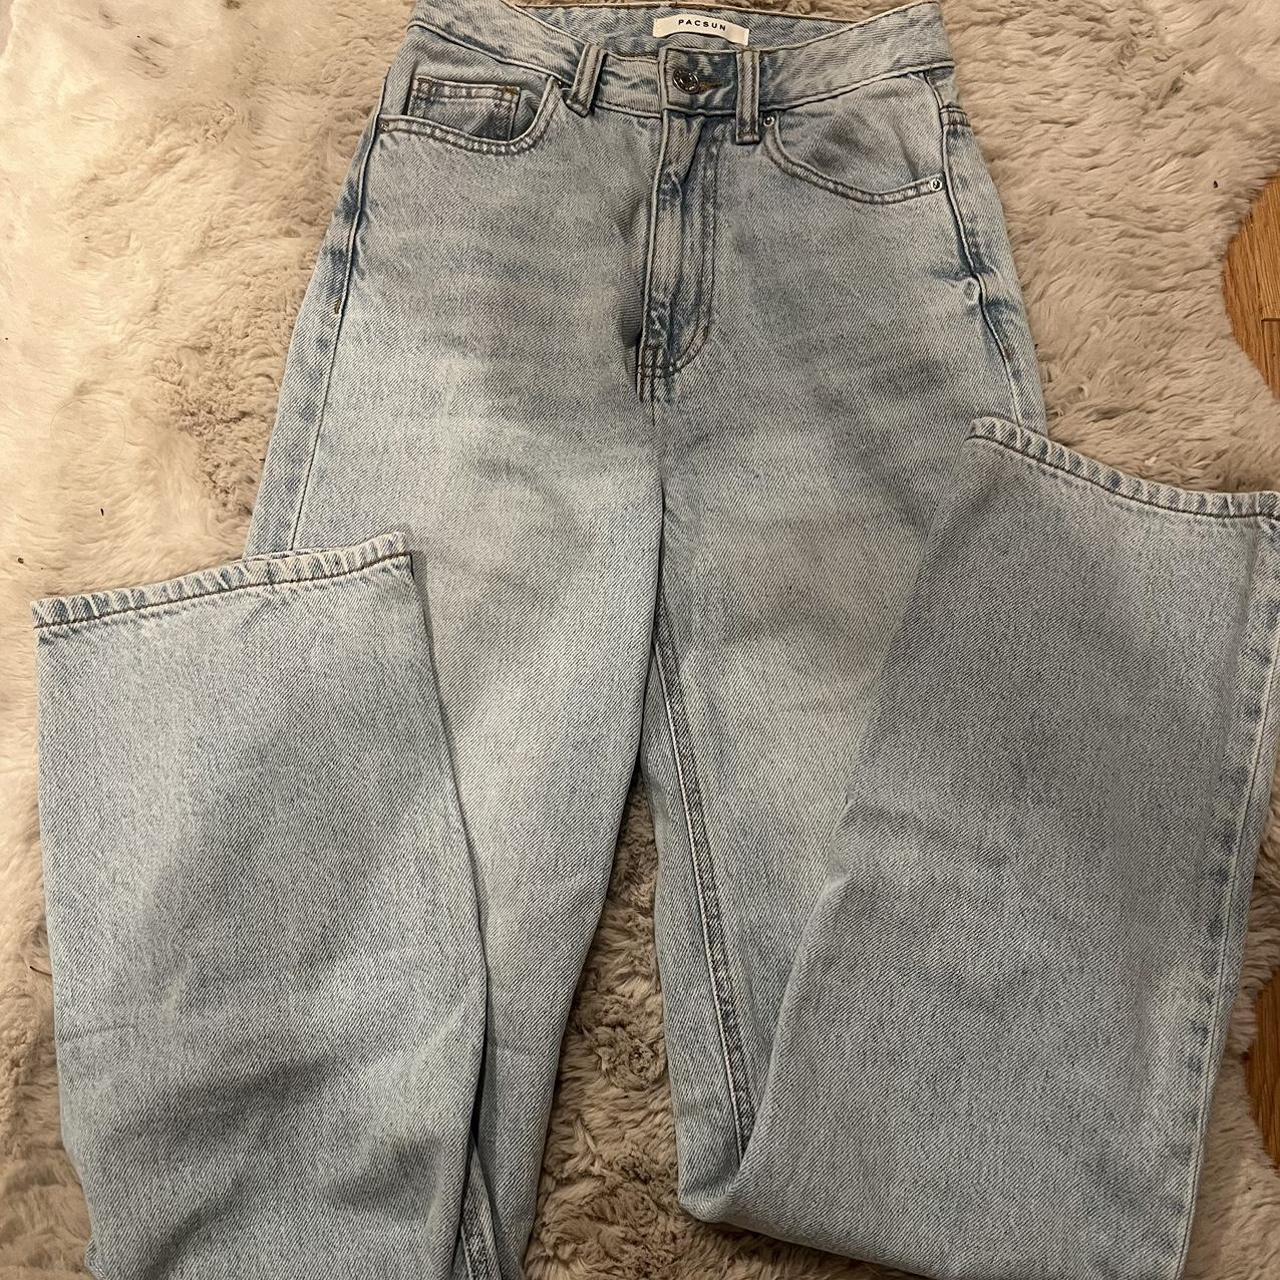 pacsun light wash jeans size 23 - Depop